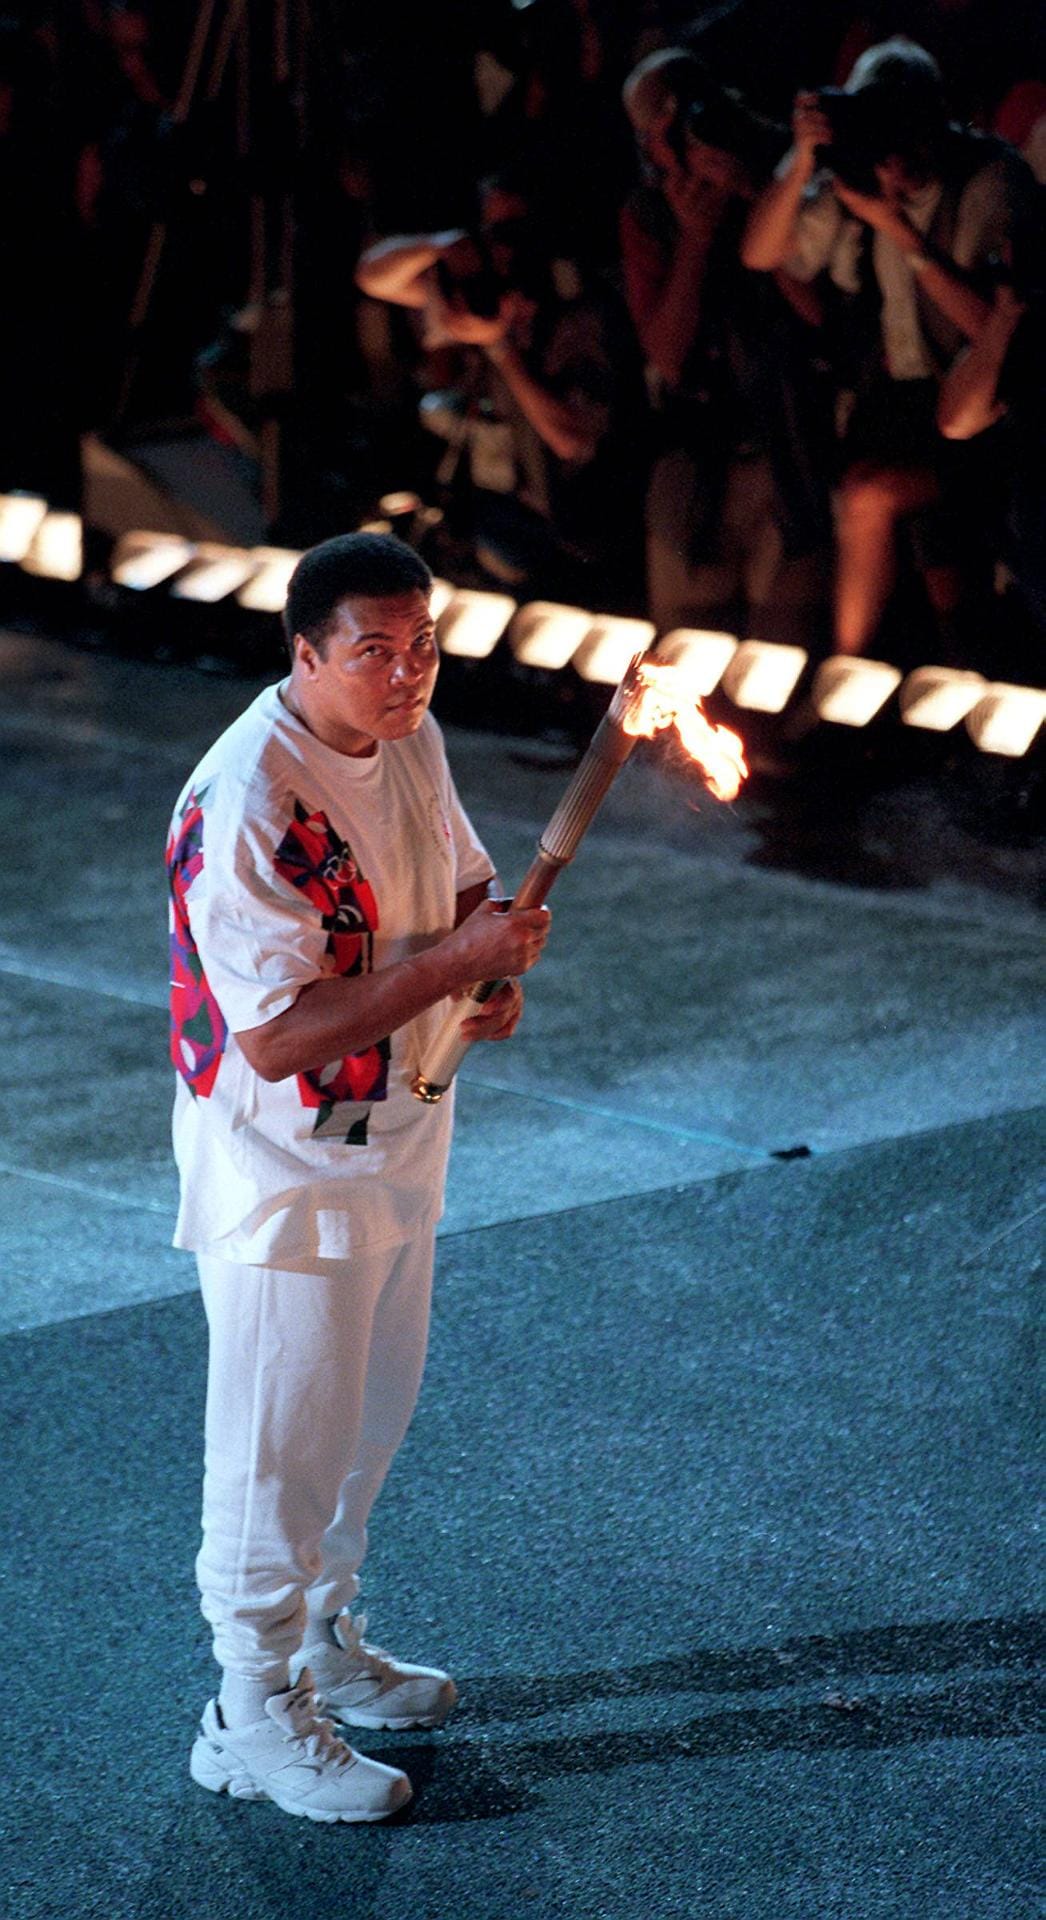 Boxlegende Muhammad Ali, der 2016 verstorben ist, entzündete 1996 in Atlanta das Olympische Feuer – bereits schwer gezeichnet von Parkinson. Es war der denkwürdigste Moment der gesamten Spiele. Der damalige US-Präsident Bill Clinton hatte vor Rührung geweint.